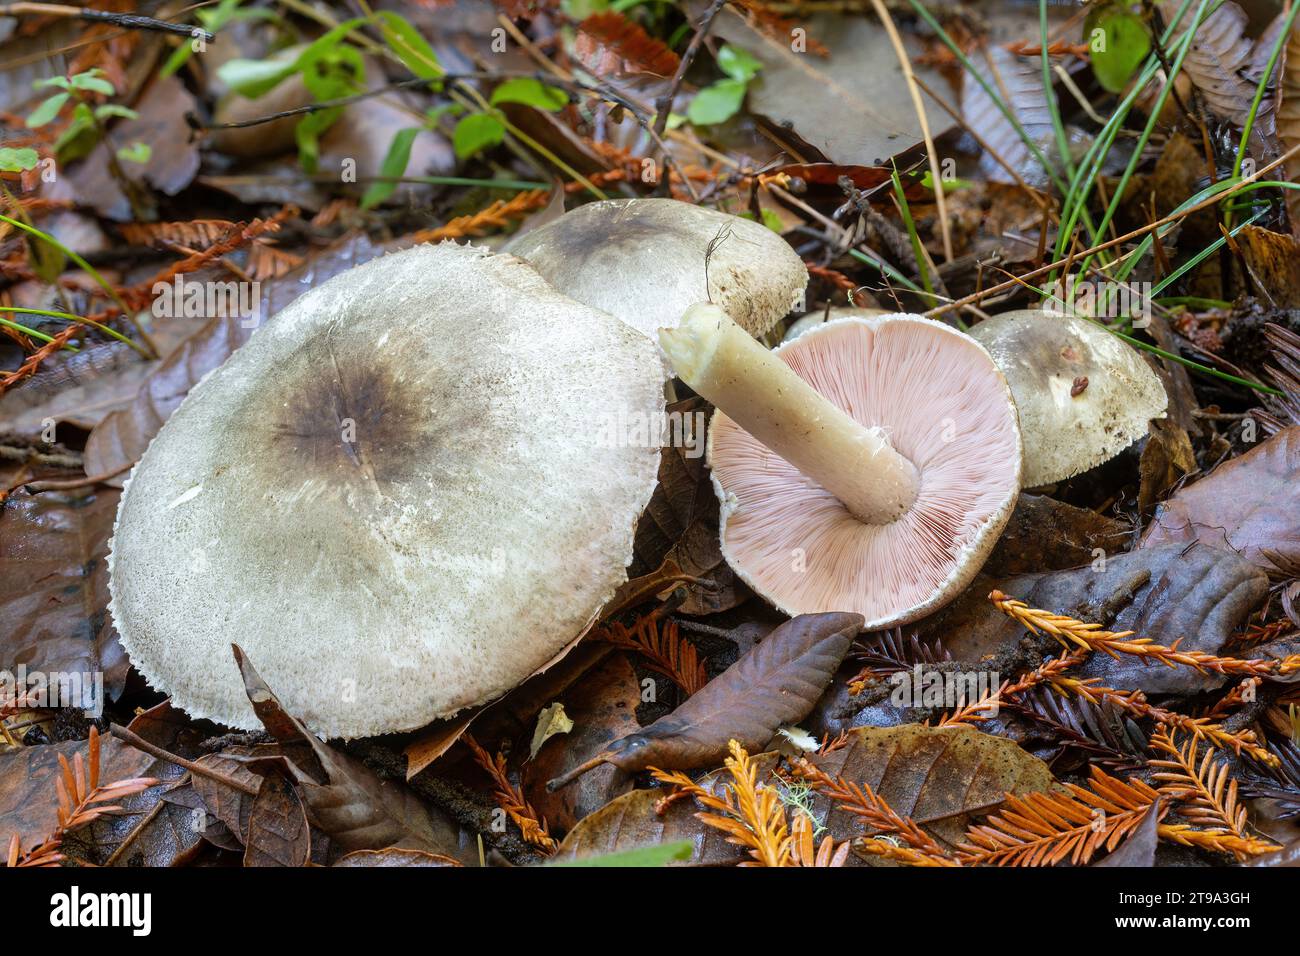 Agaricus, eine Pilzgattung, die sowohl essbare als auch giftige Arten umfasst. Santa Cruz Mountains, Kalifornien. Stockfoto